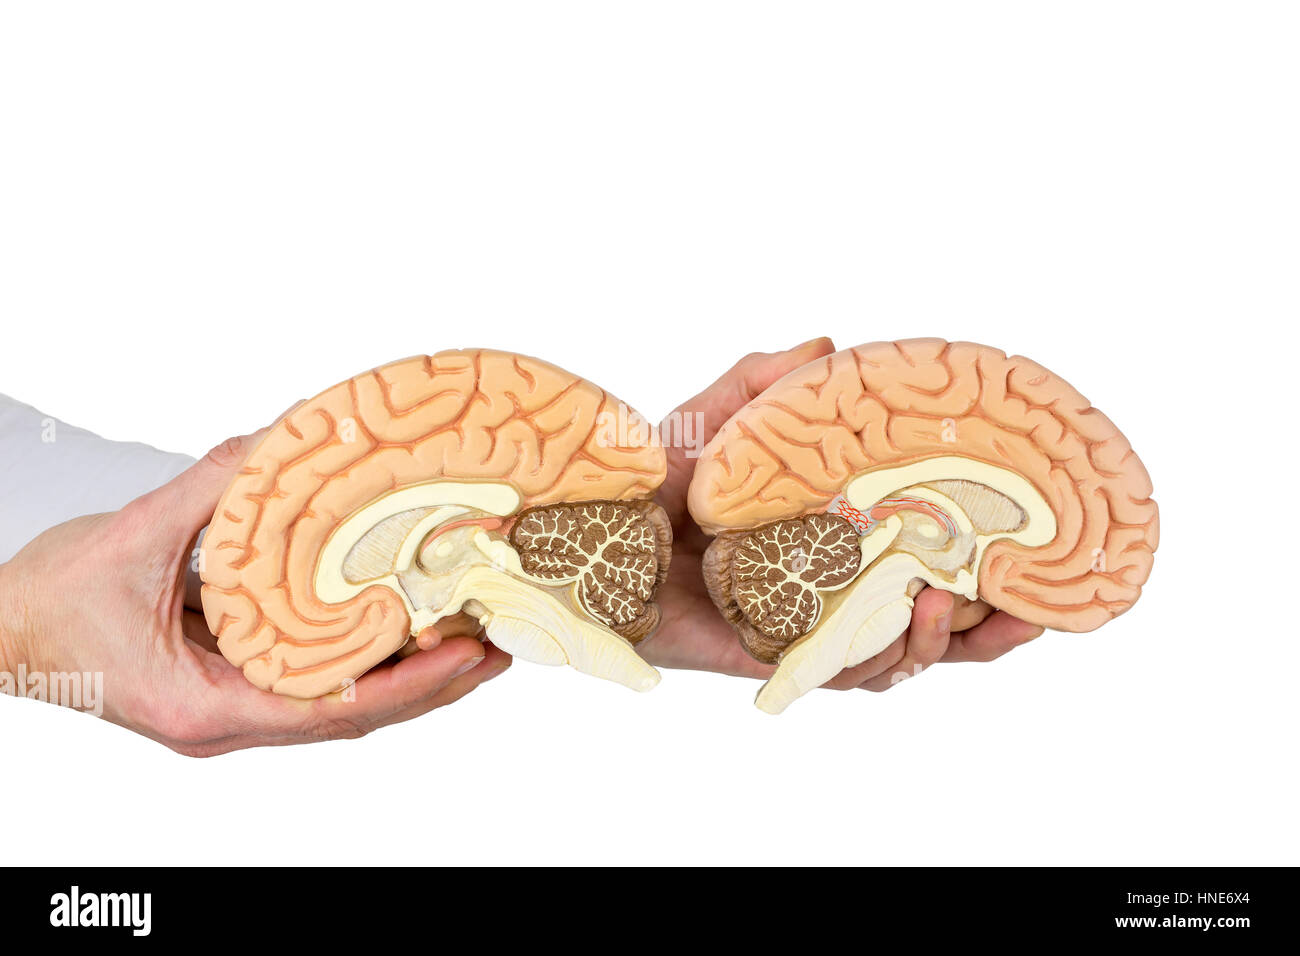 Mani tenendo i modelli umani emisferi cerebrali isolati su sfondo bianco Foto Stock